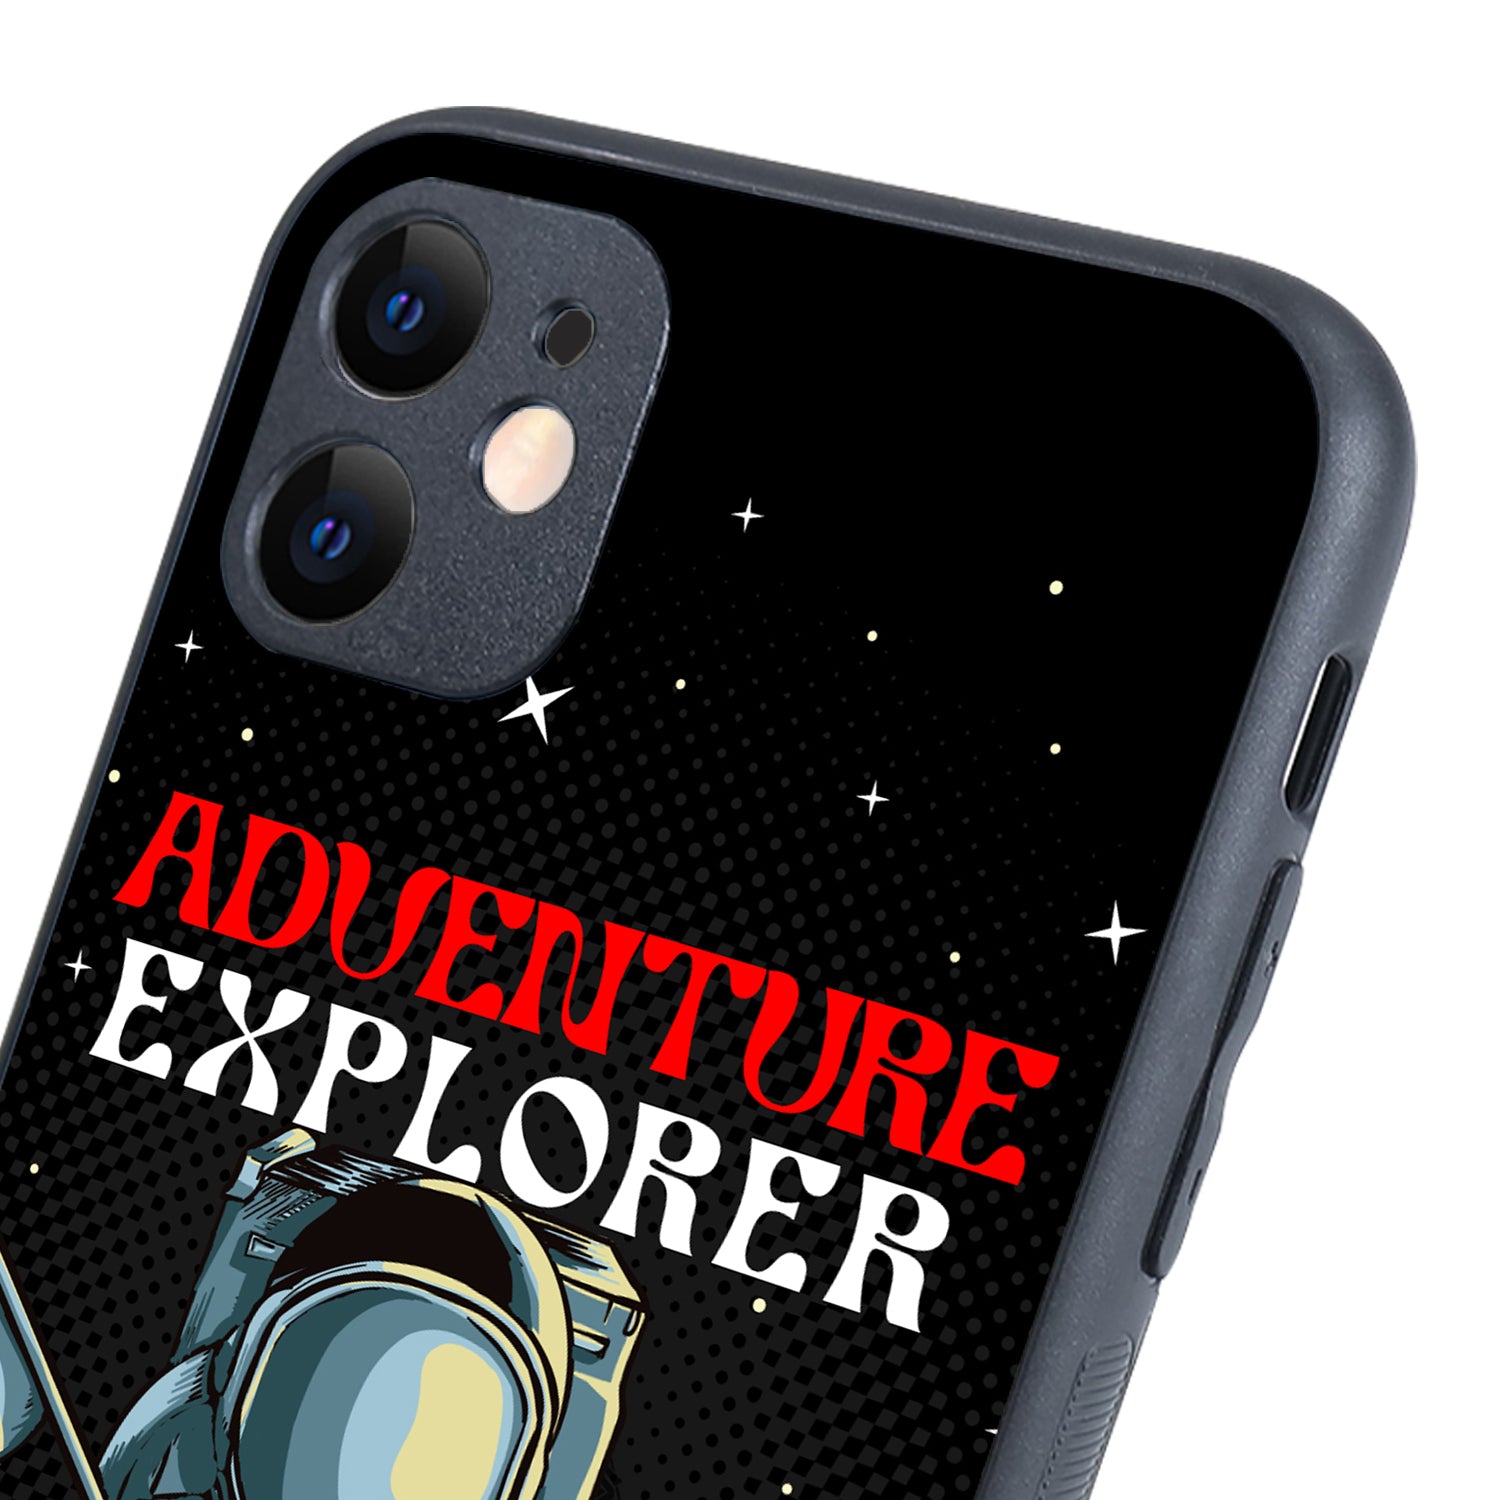 Adventure Explorer Space iPhone 11 Case